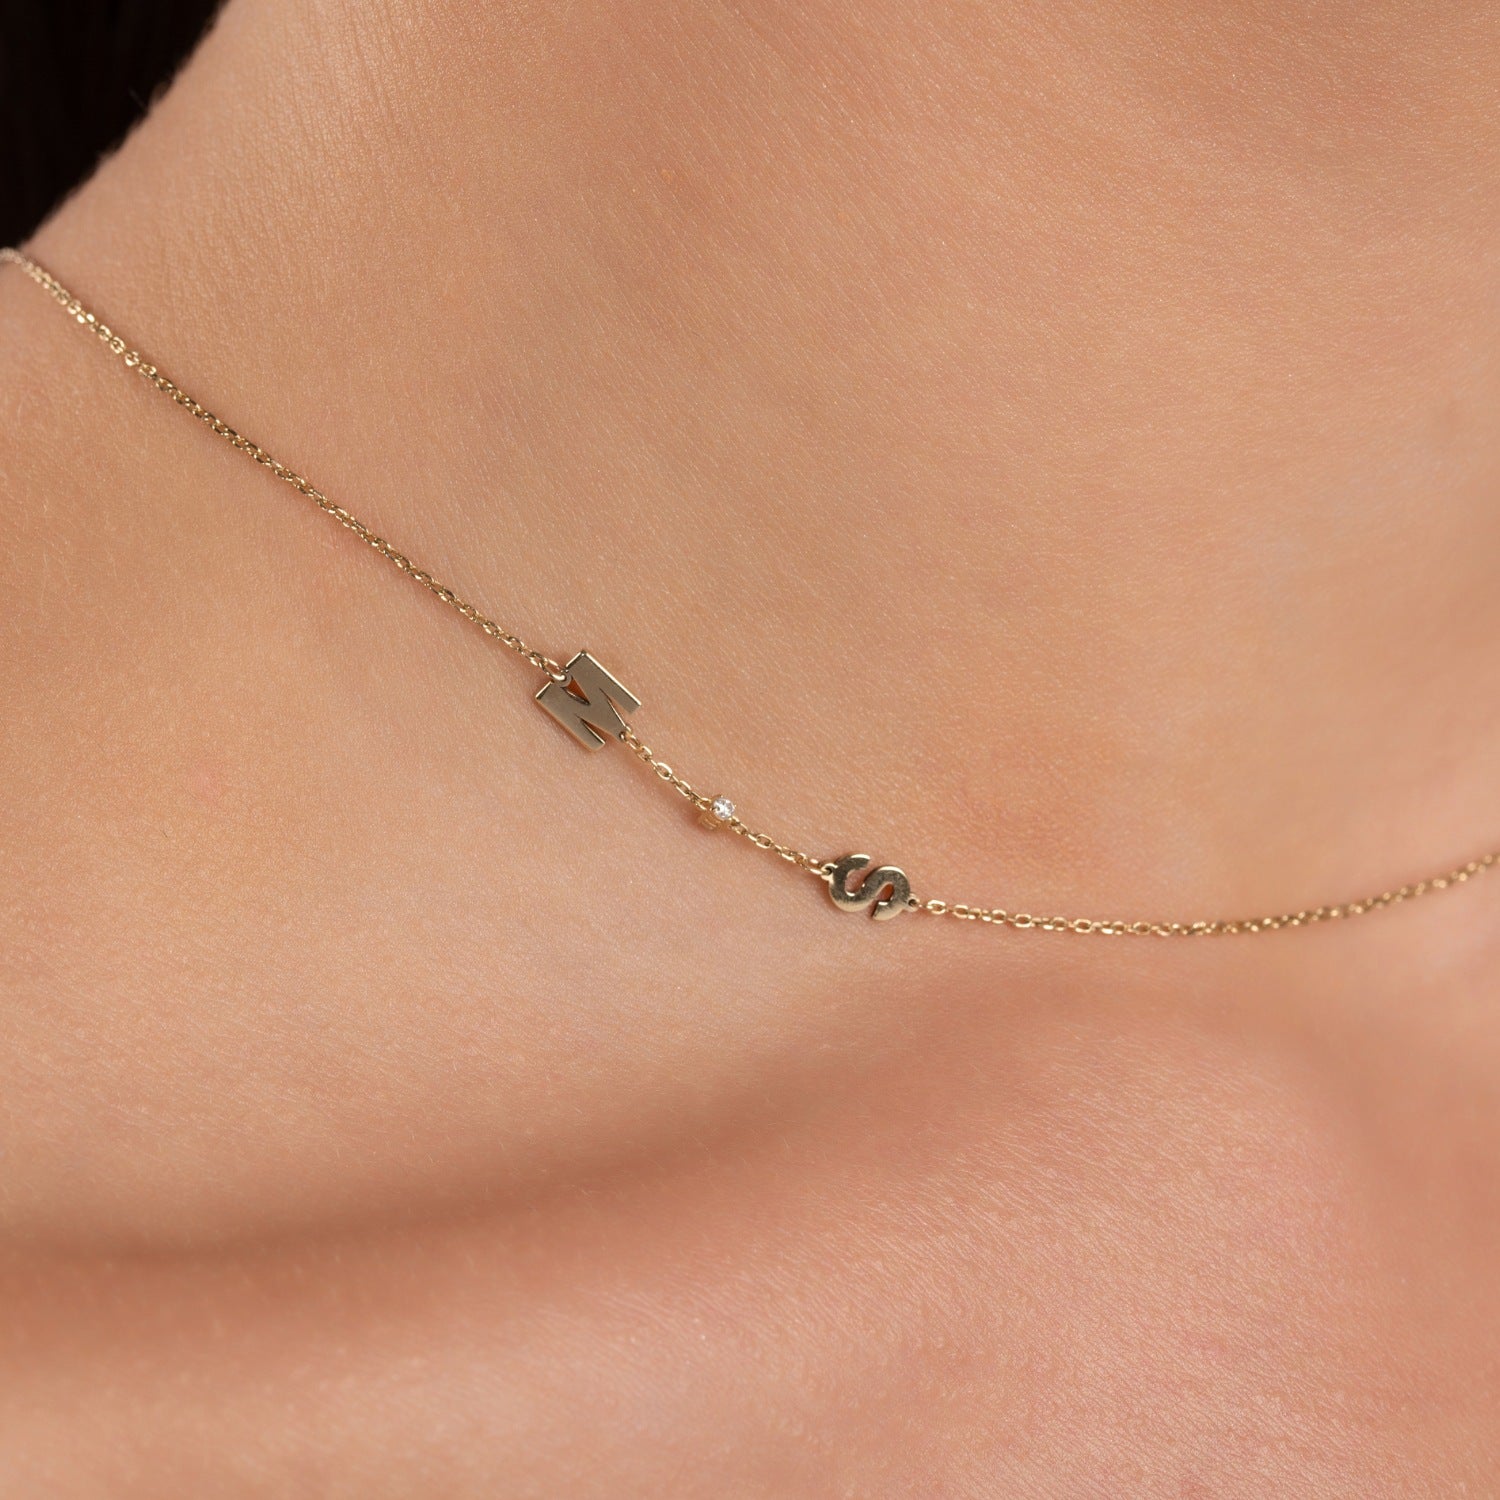 Sideways Initial Necklace with Diamond